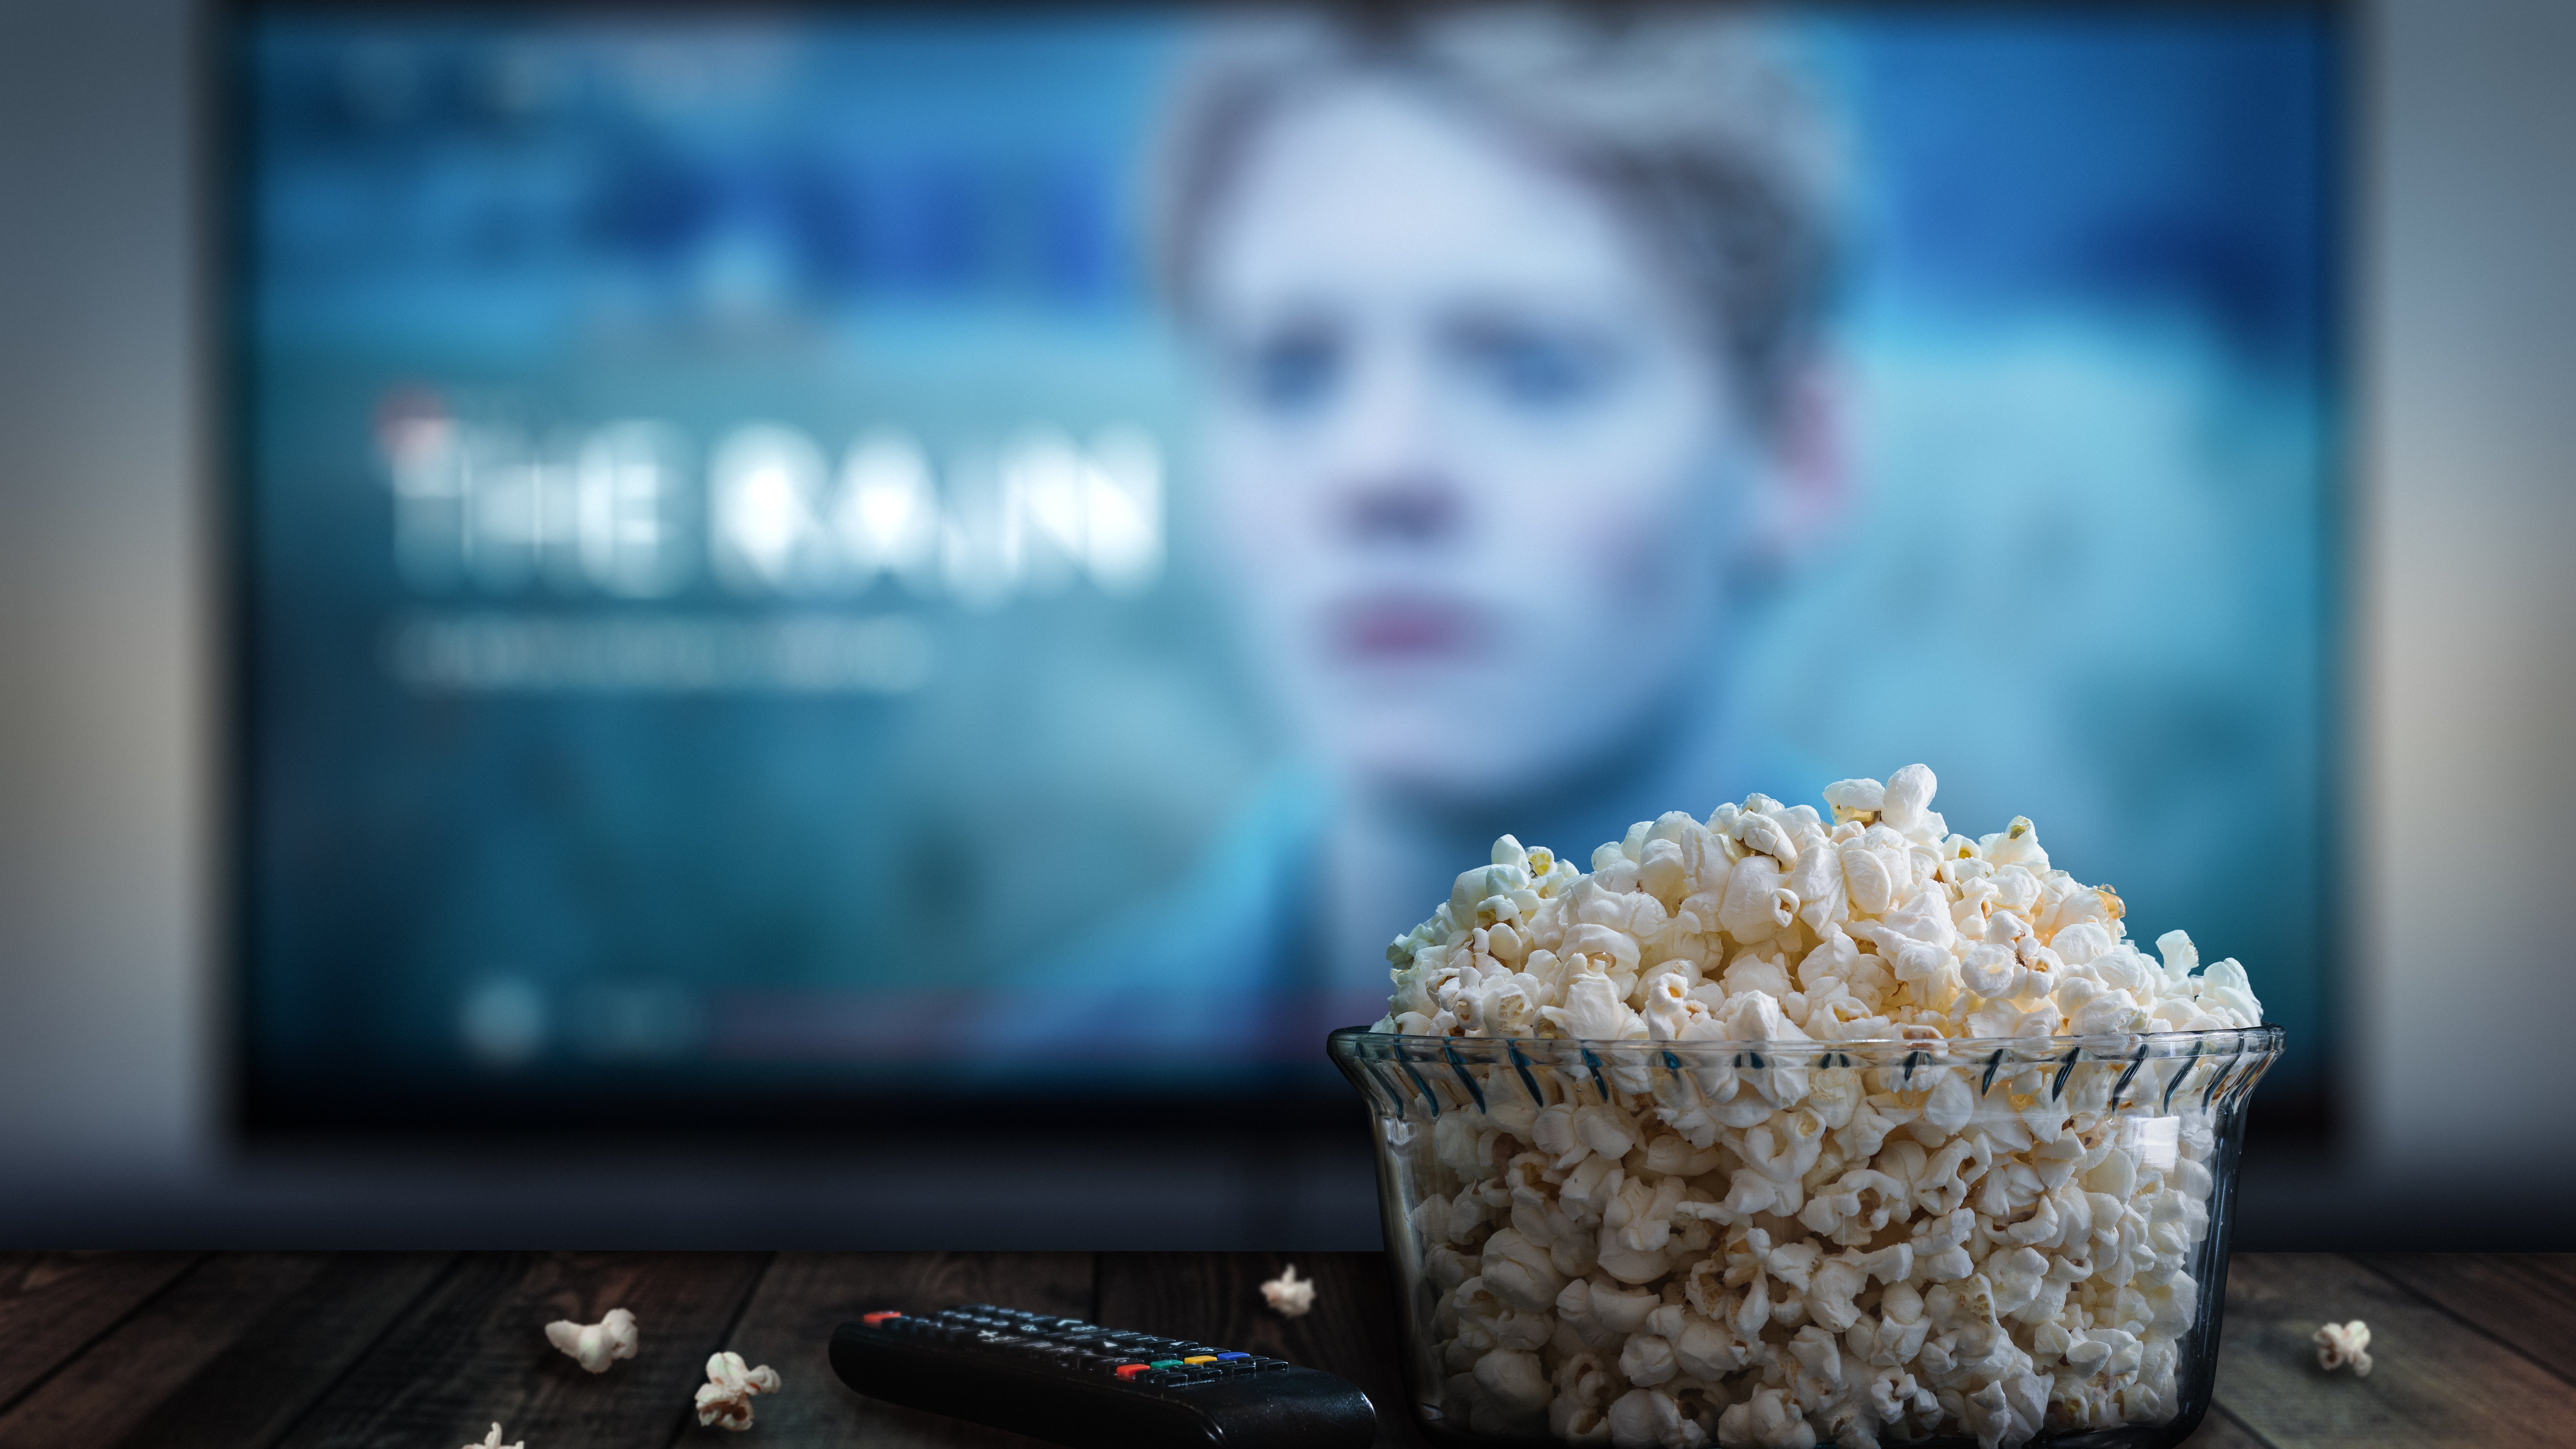 eine Schale mit Popcorn steht auf einem Tisch neben einer Fernbedienung, dahinter verschwommen ein TV-Bildschirm